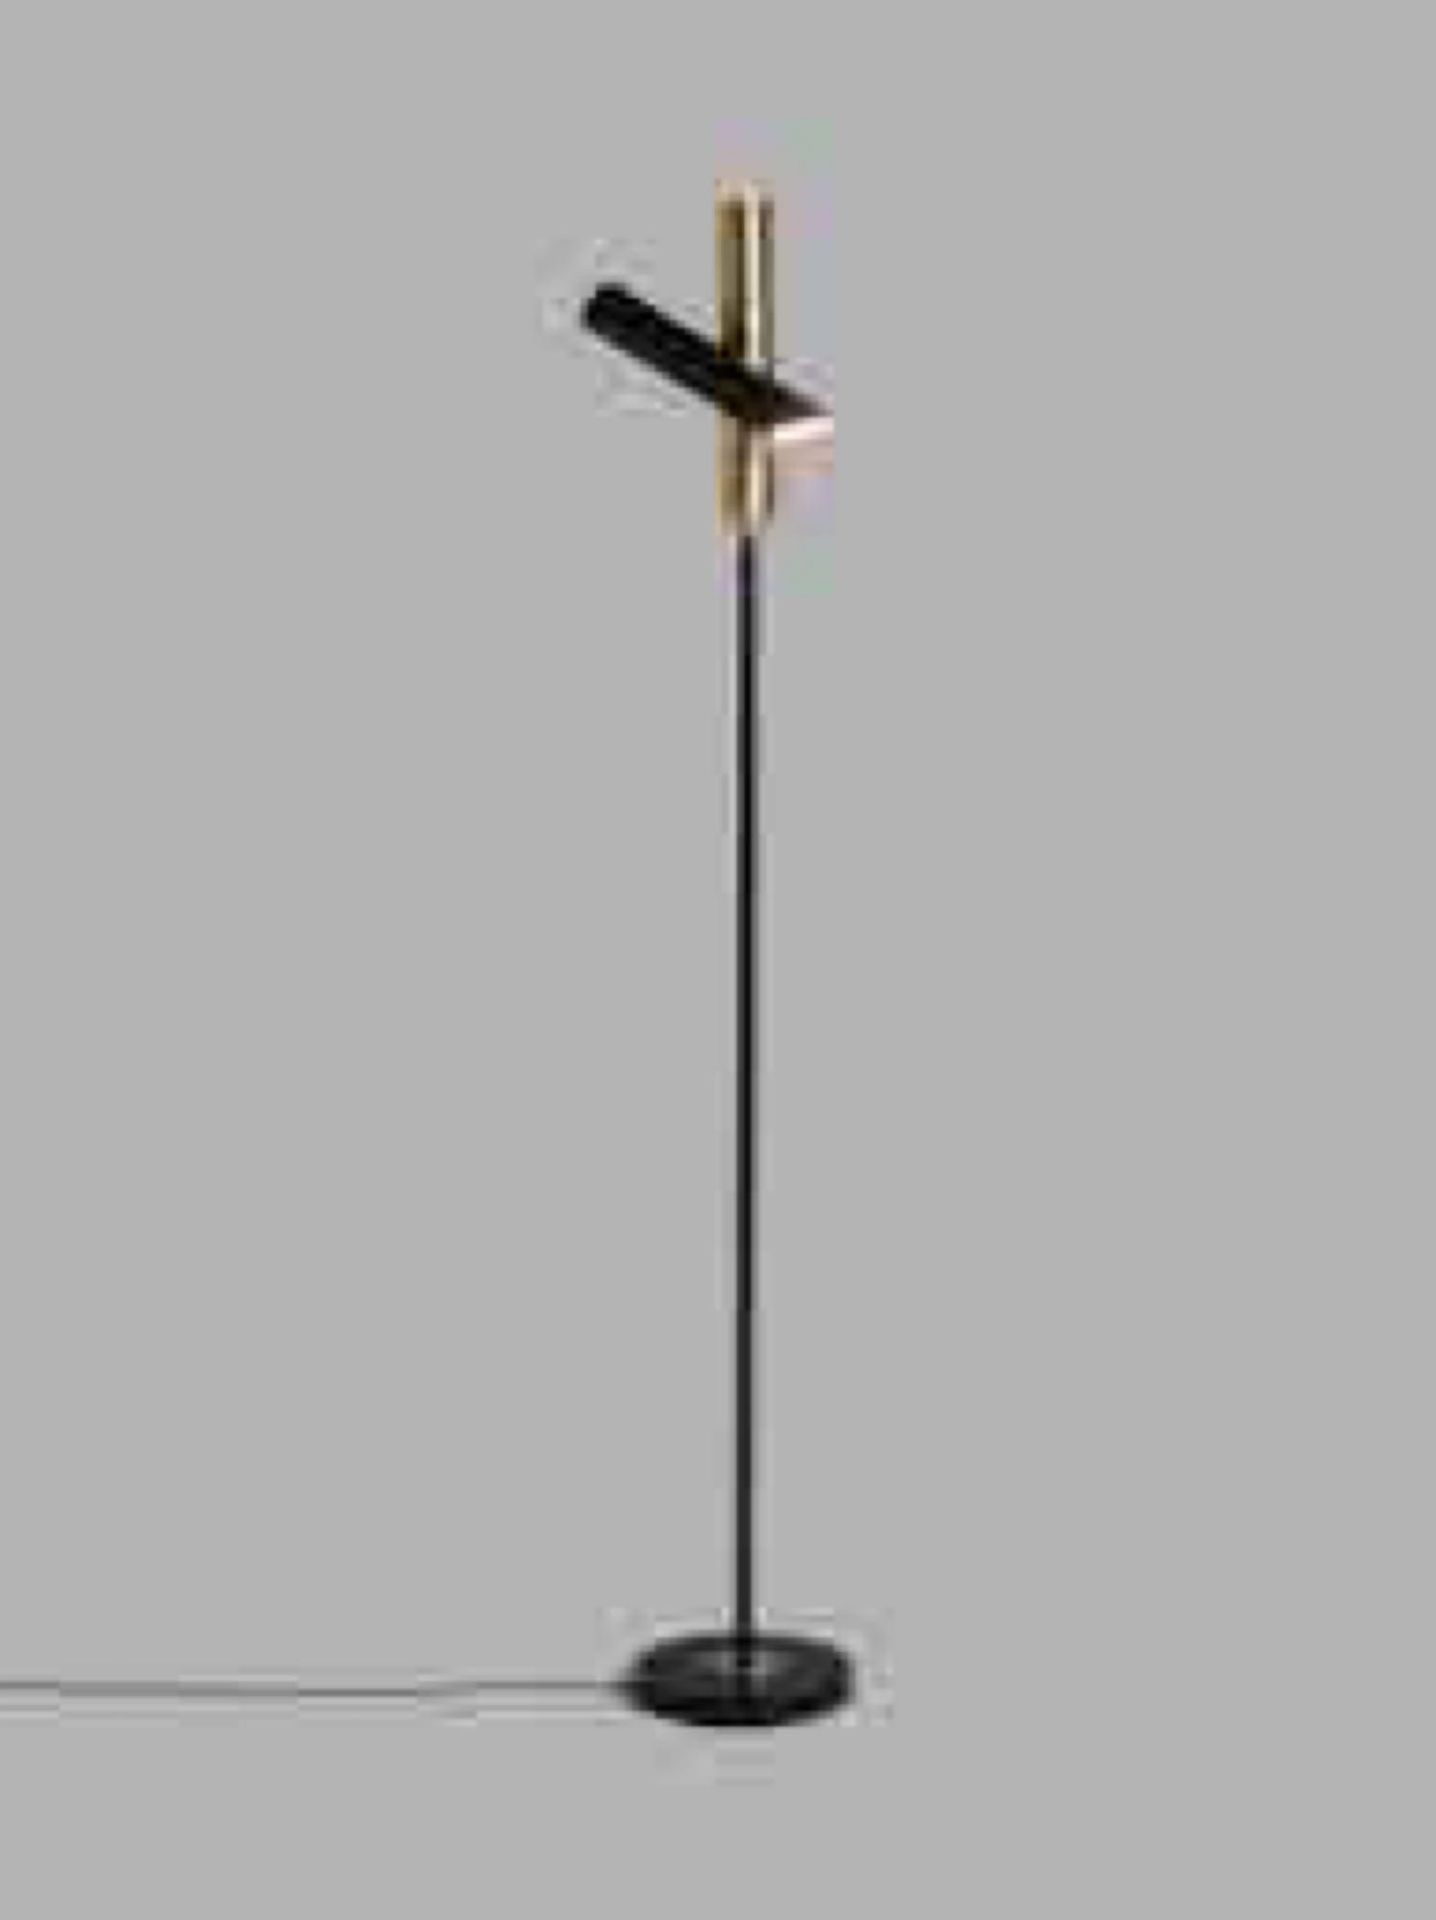 RRP £150 1 Boxed John Lewis & Partners Swivel Led Uplighter Floor Lamp, Black/Brass